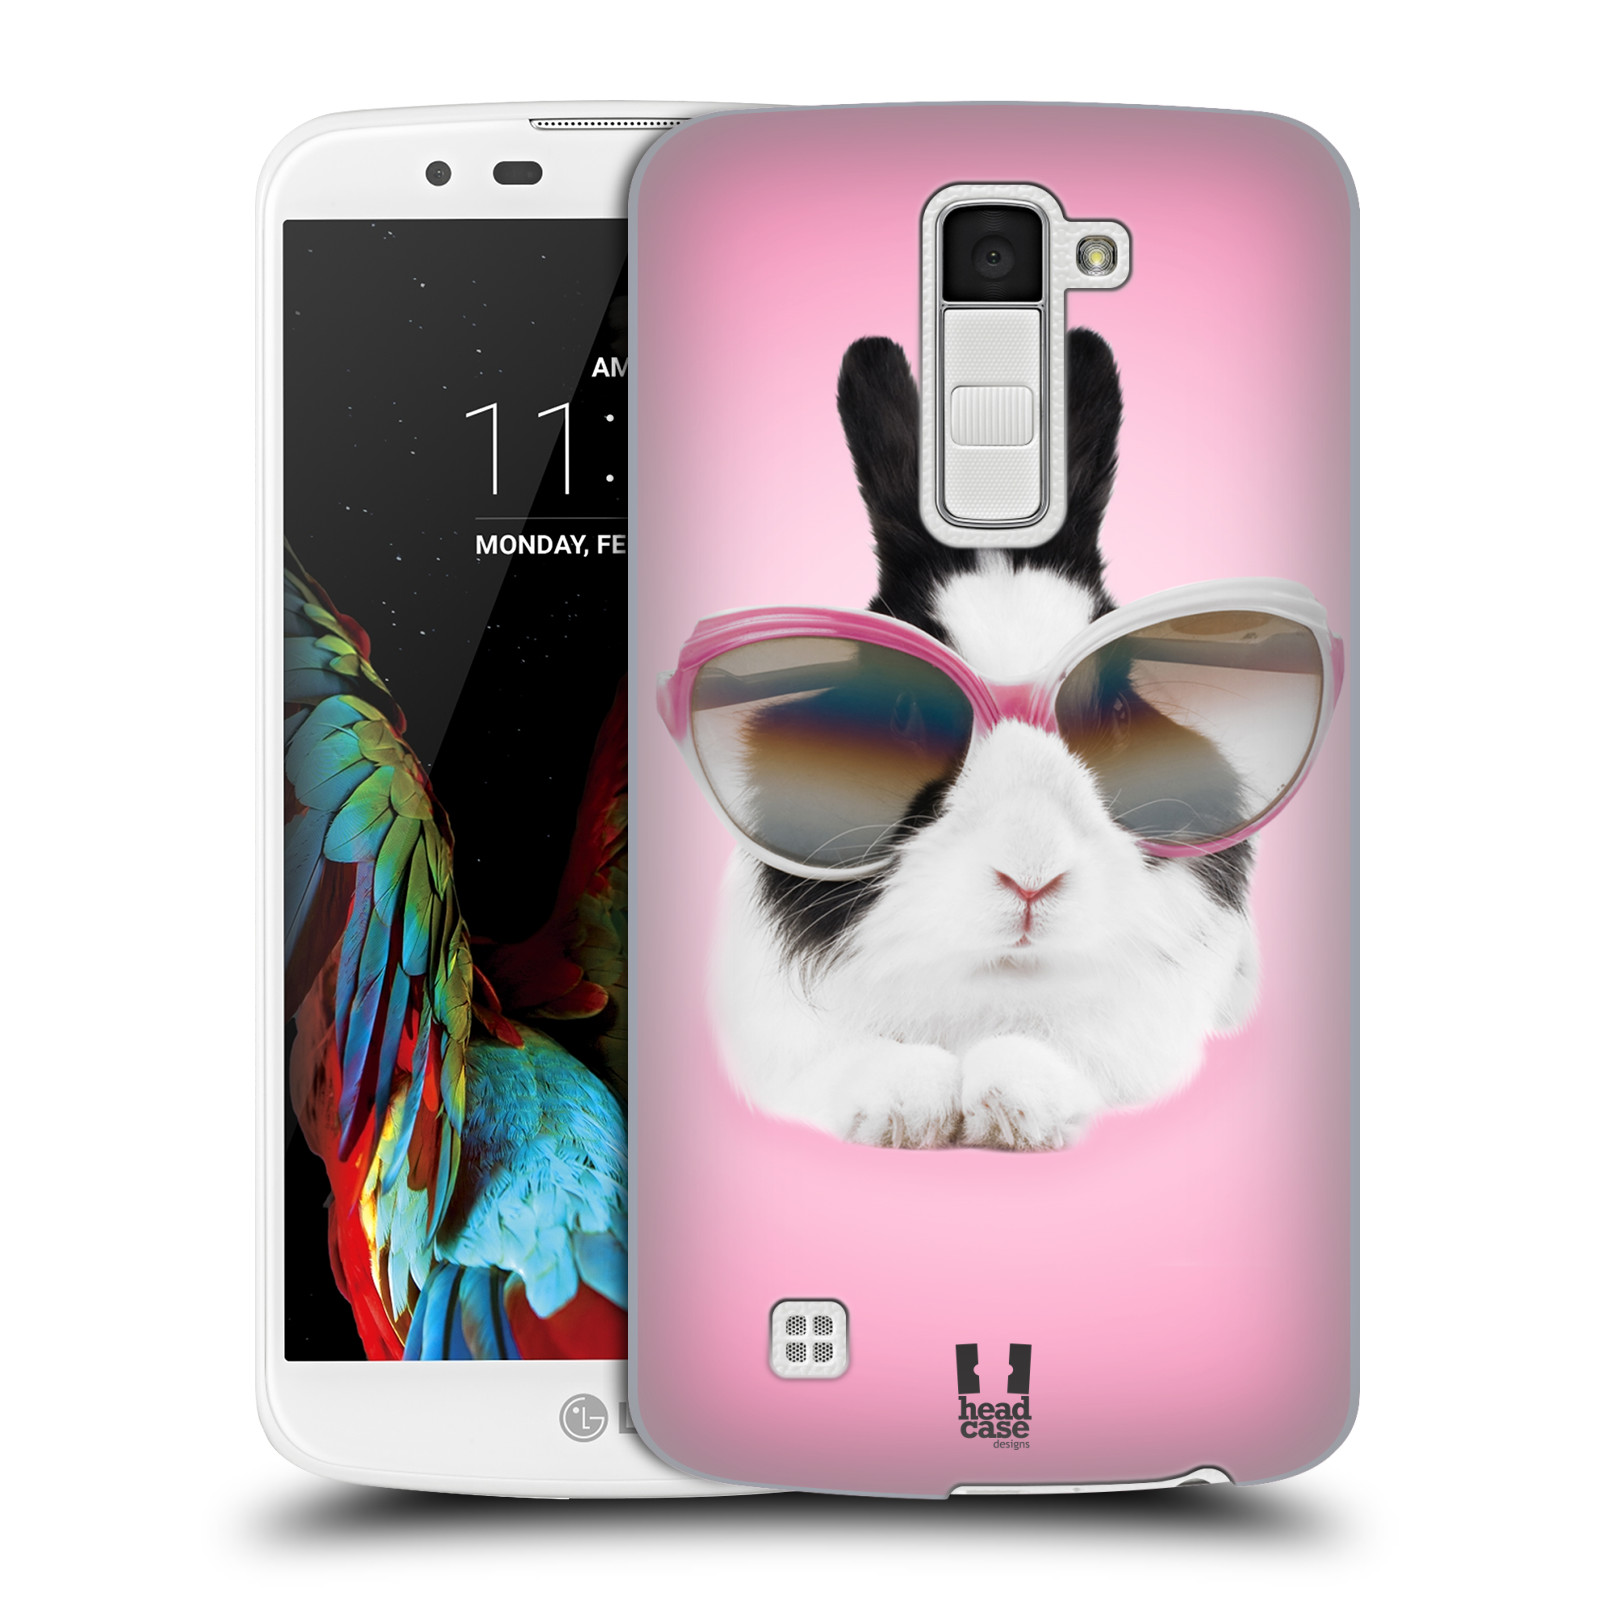 HEAD CASE plastový obal na mobil LG K10 vzor Legrační zvířátka roztomilý králíček s brýlemi růžová